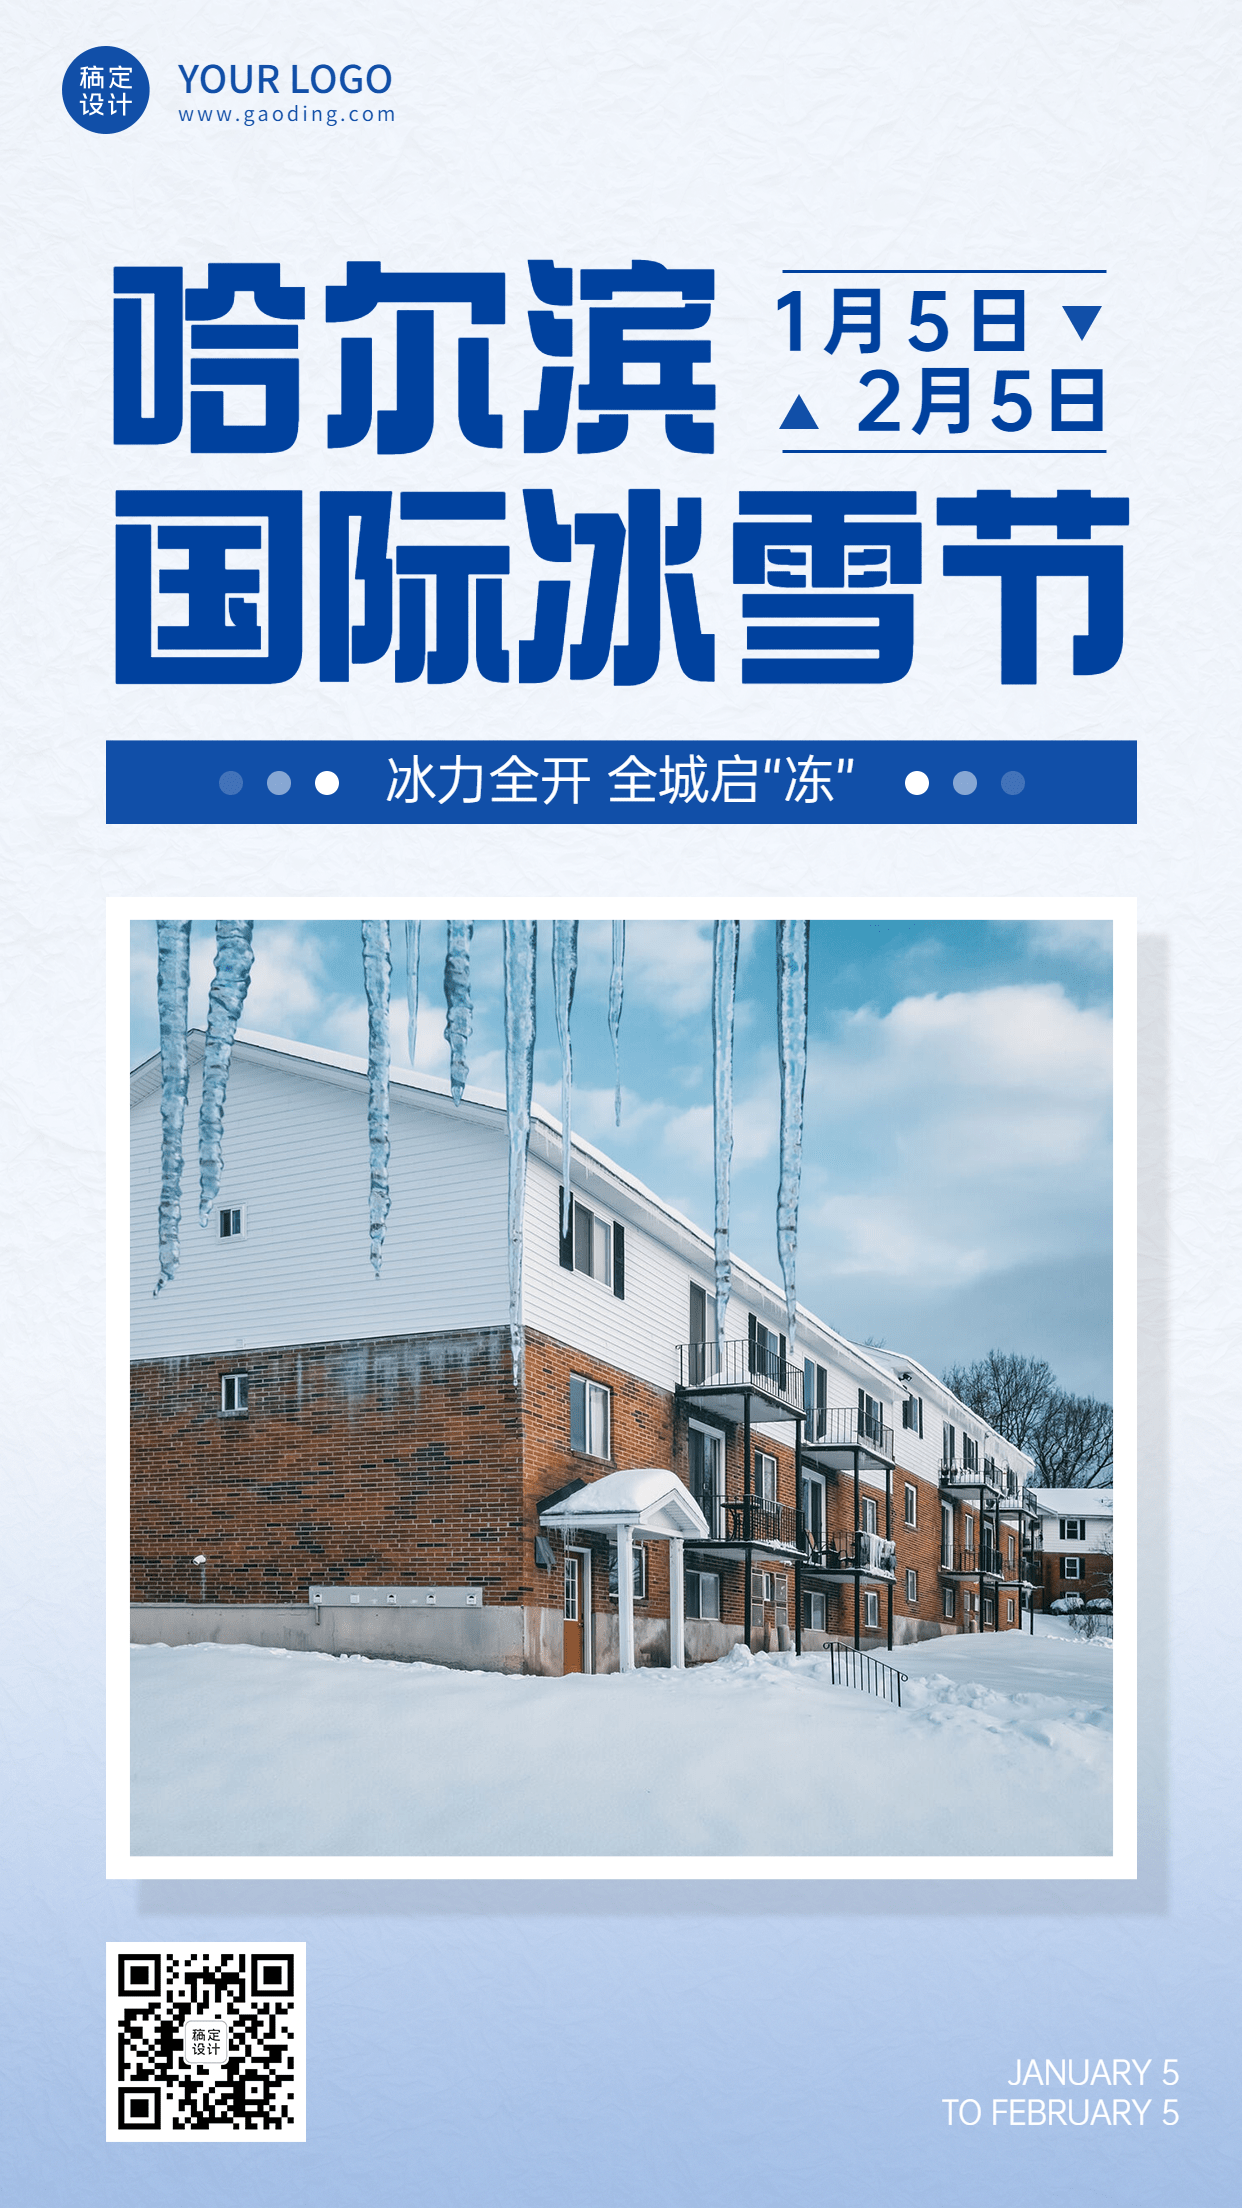 冬季冰雪旅游哈尔滨国际冰雪节活动宣传简约实景海报